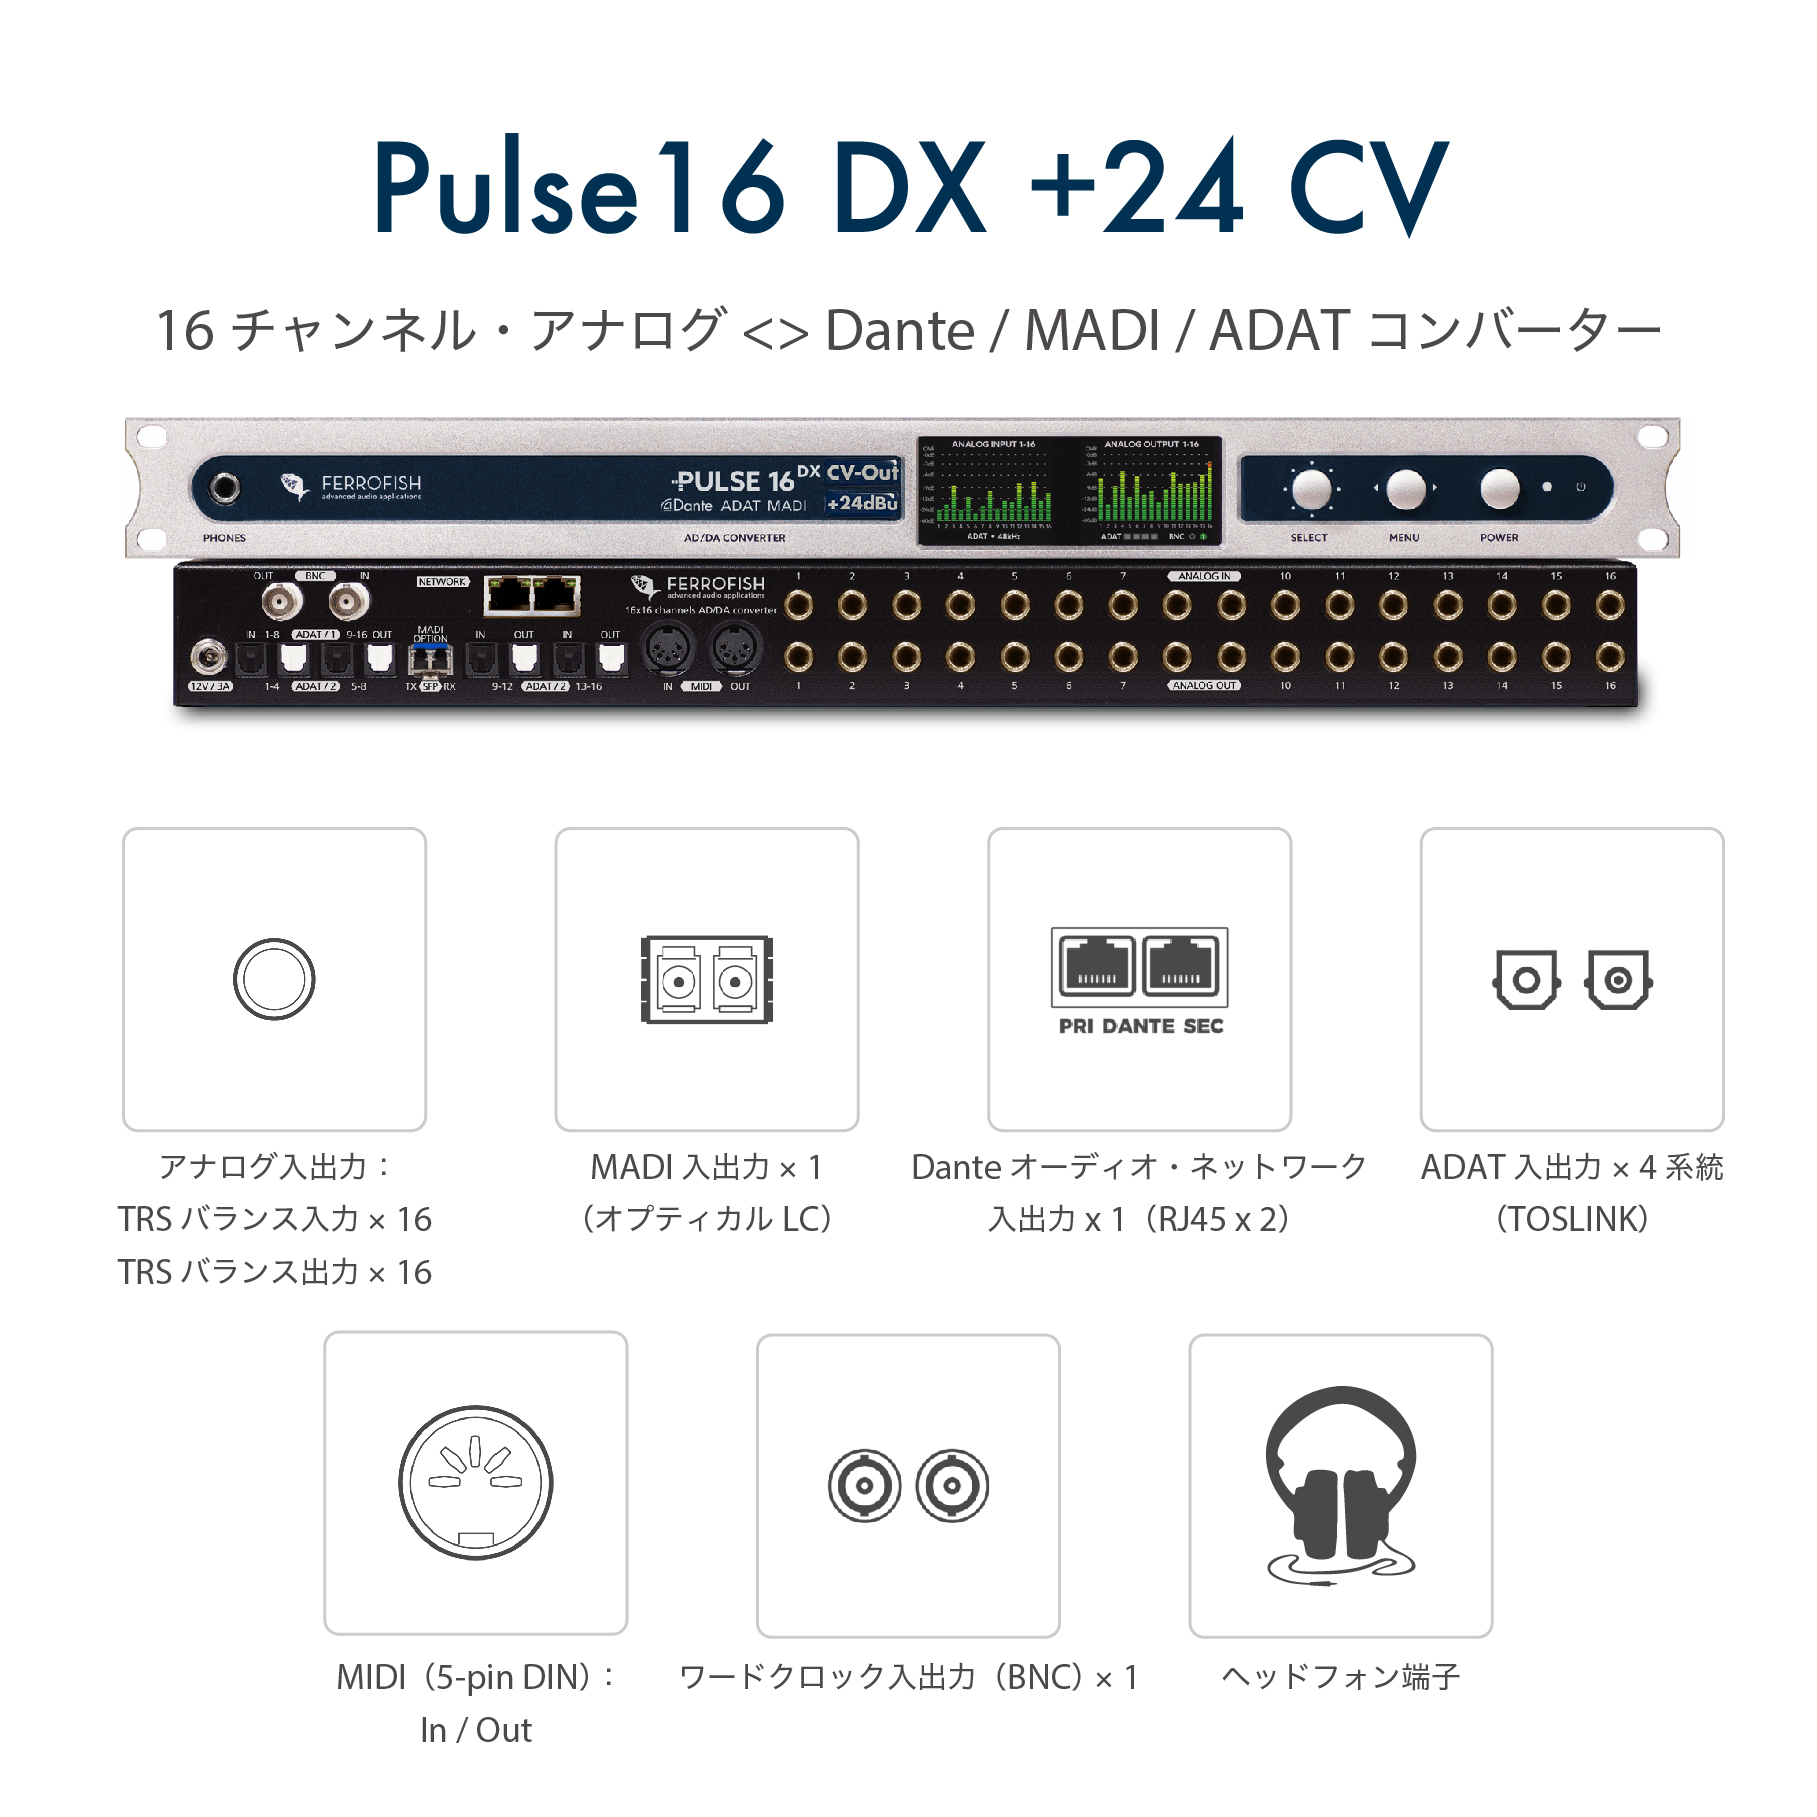 Pulse16 DX +24 CV